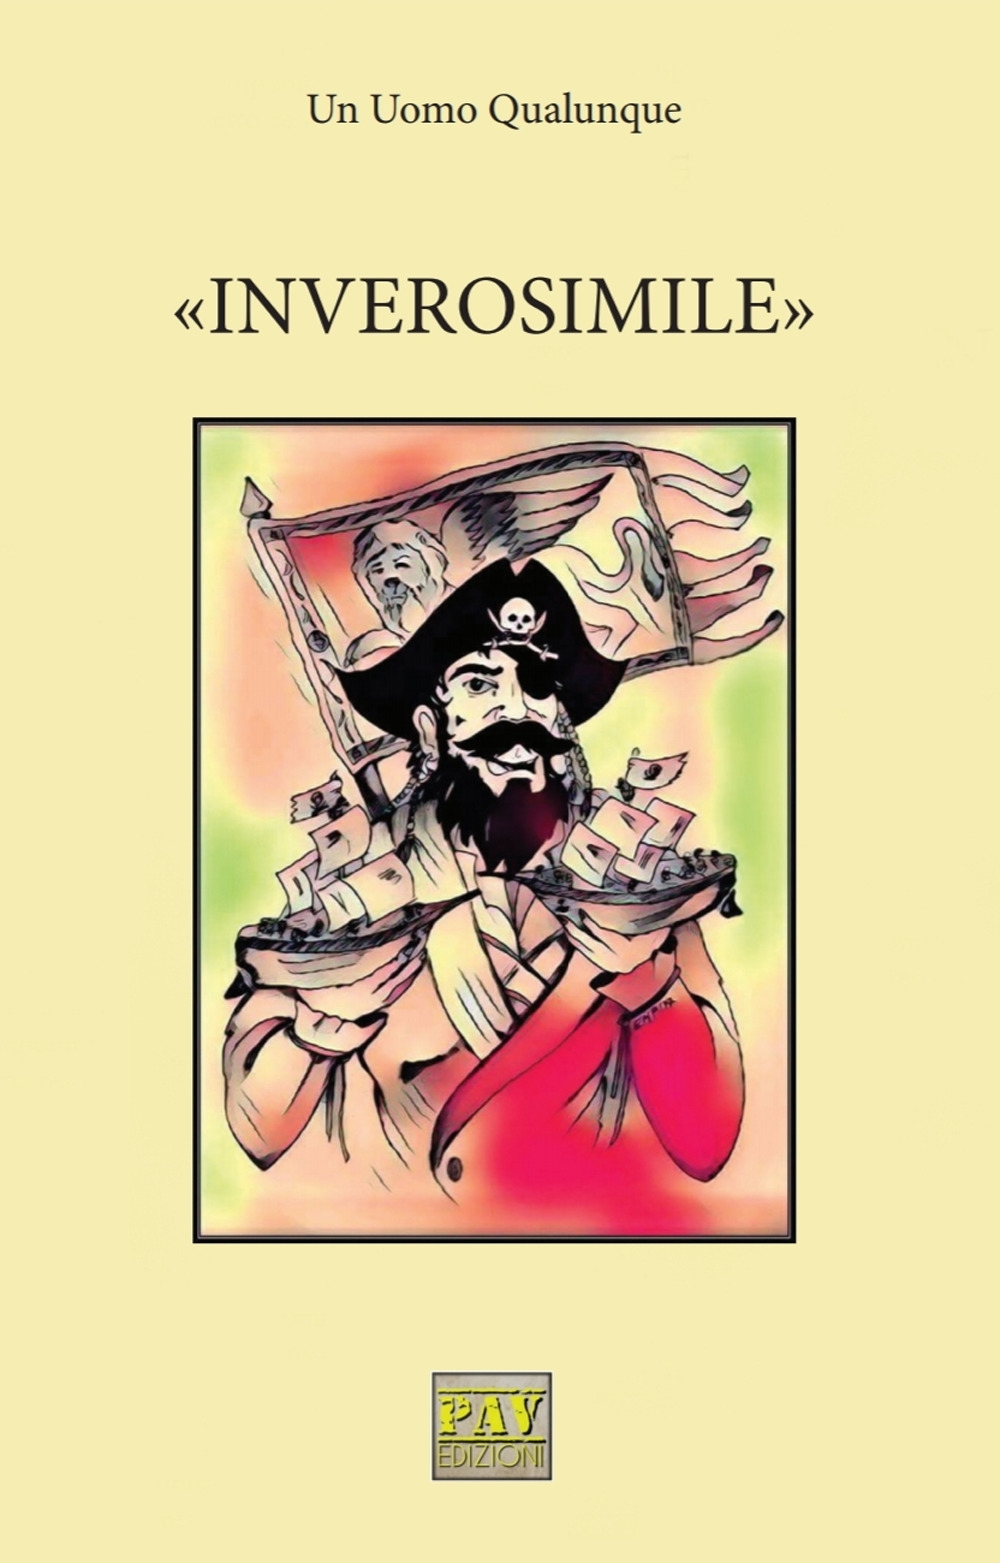 "Inverosimile" - [Pav Edizioni] - Picture 1 of 1